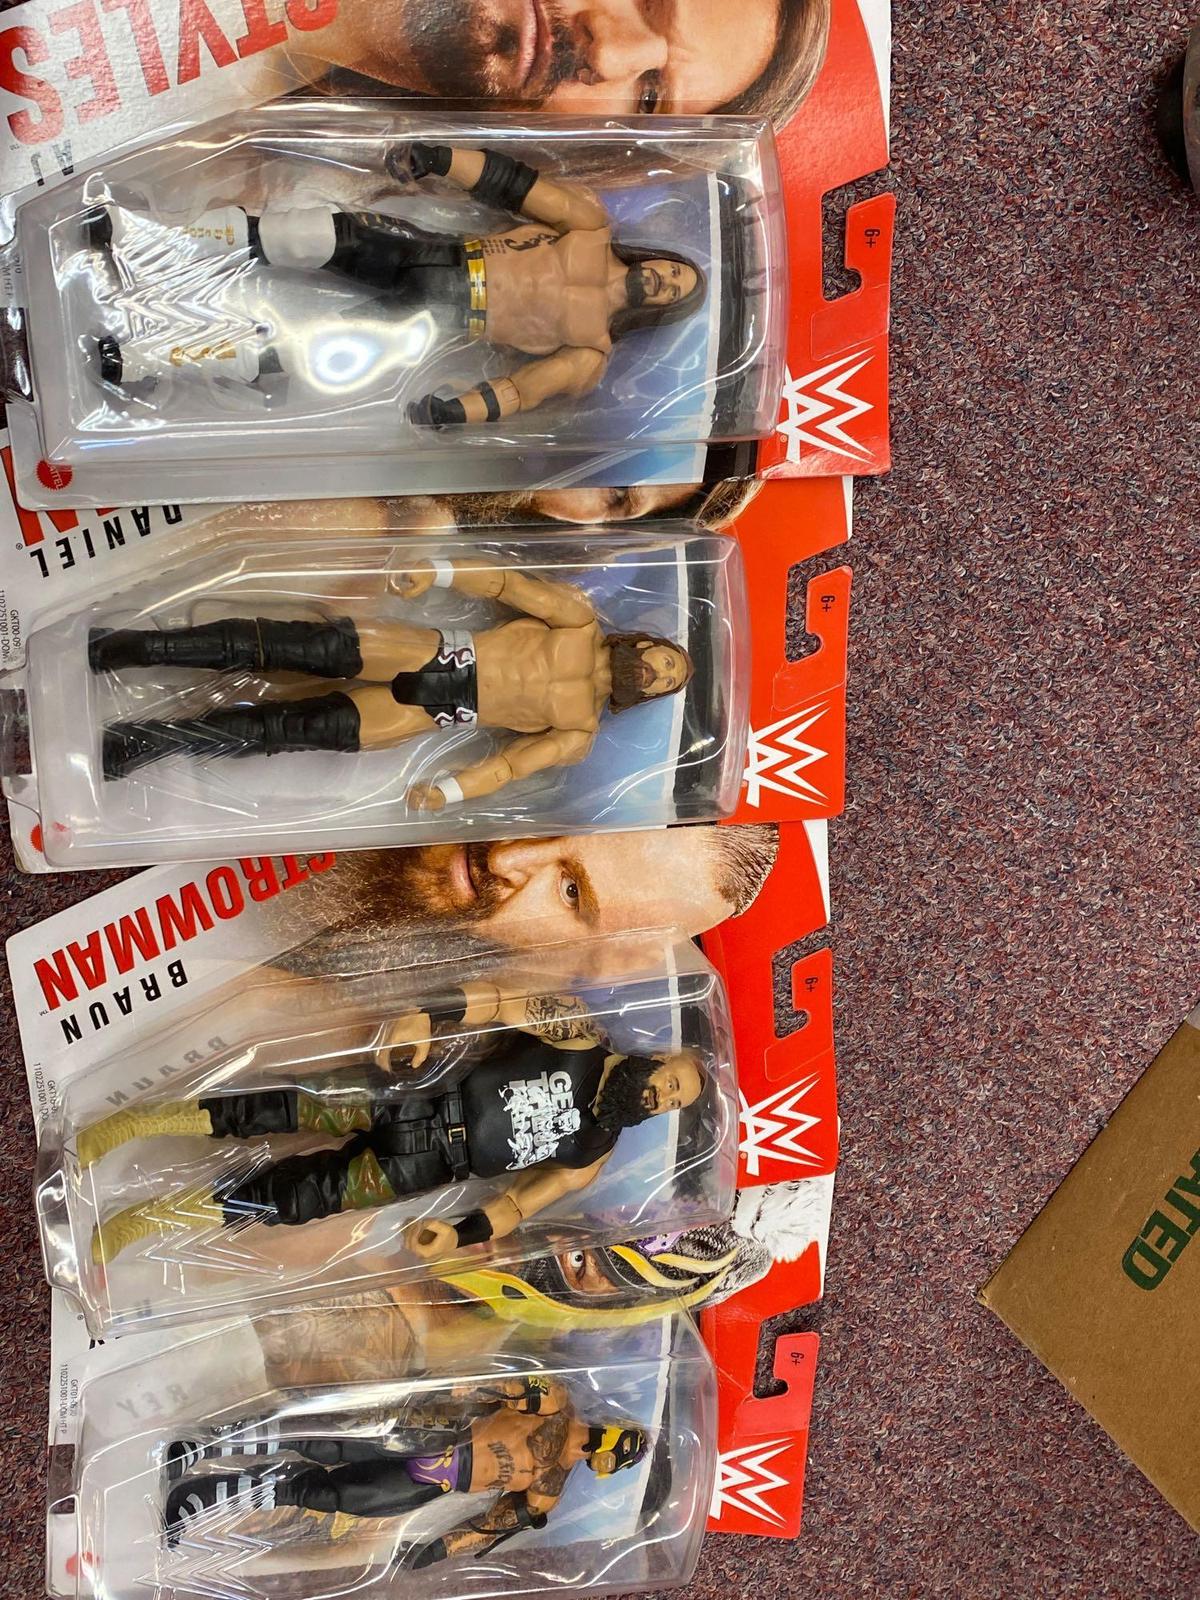 4 wrestling figures